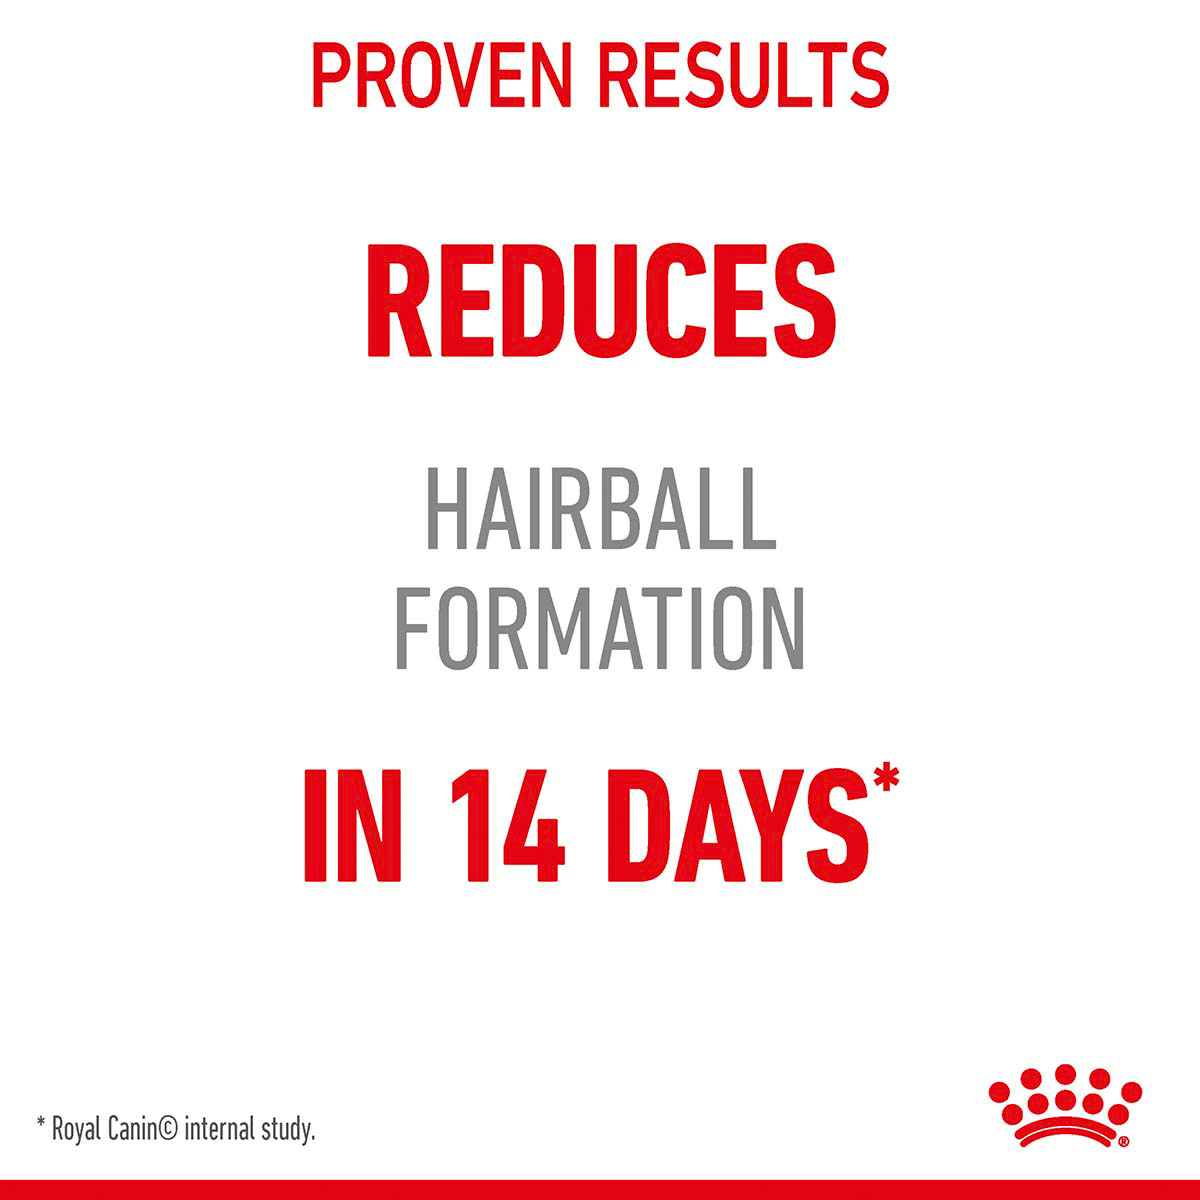 Royal Canin FCN Hairball Care želé